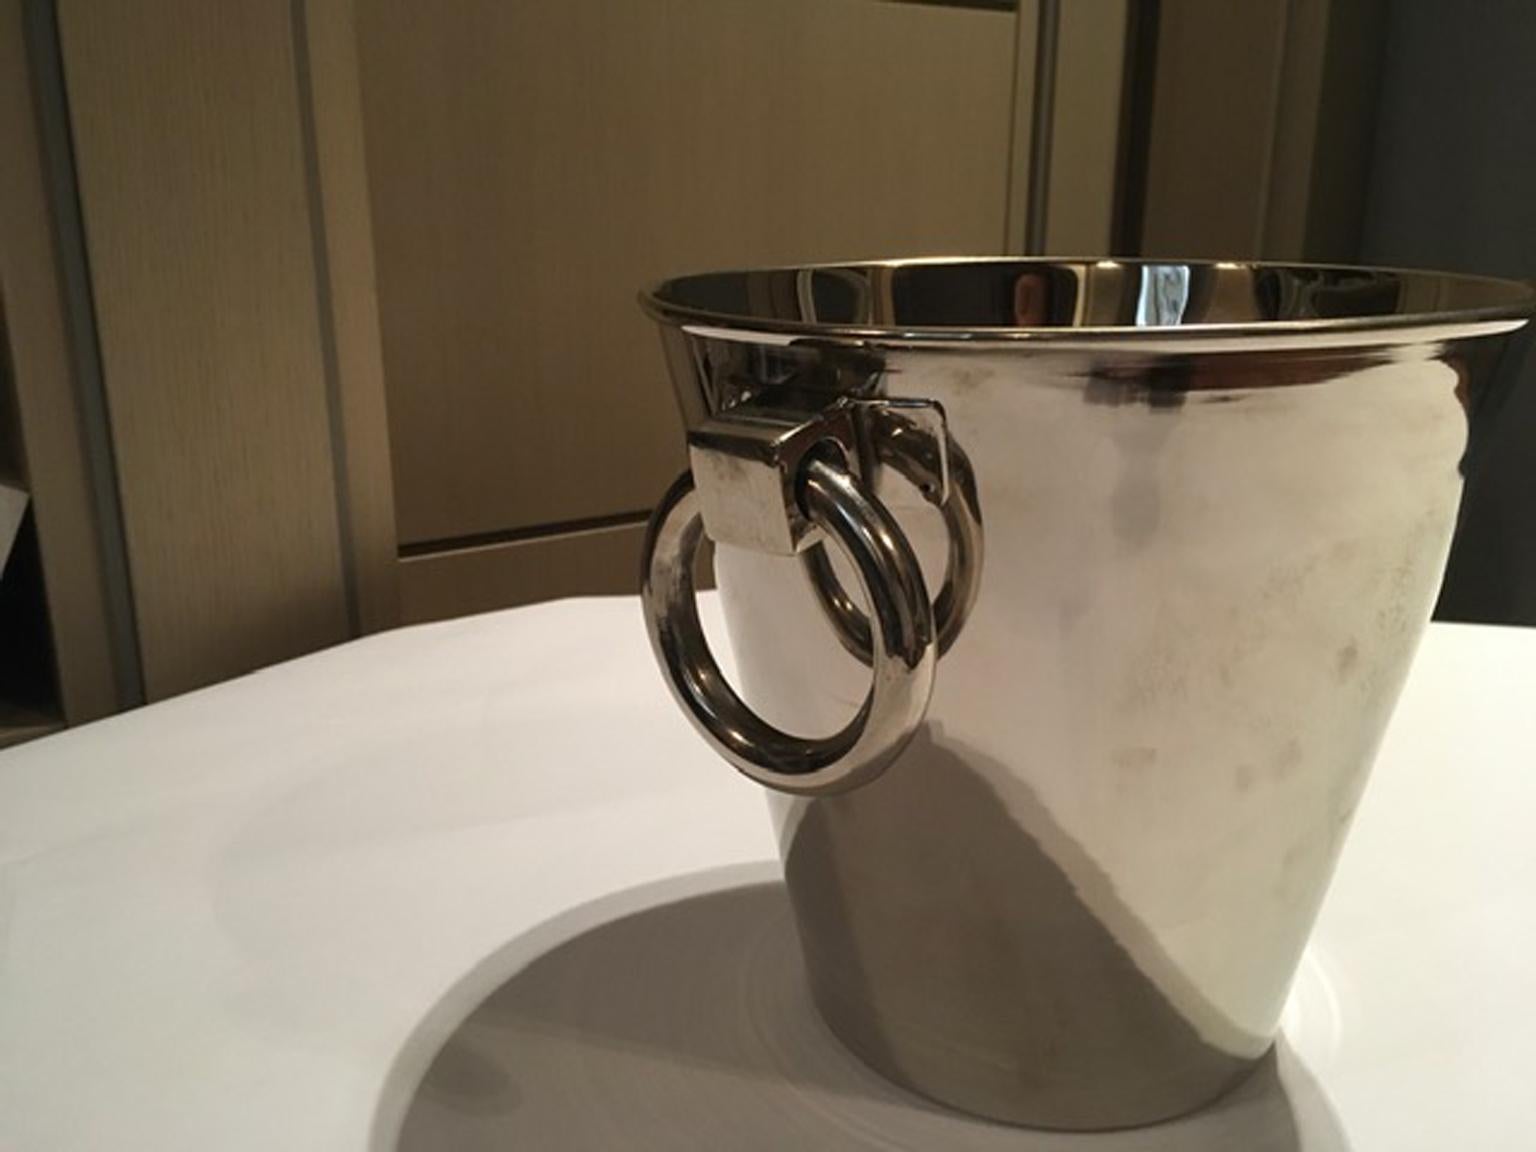 Cet élégant modèle de seau à glace est réalisé en métal argenté. Le design italien contemporain ajoute un plus à cette pièce. Une paire d'anneaux est un détail décoratif qui sert également de poignée.